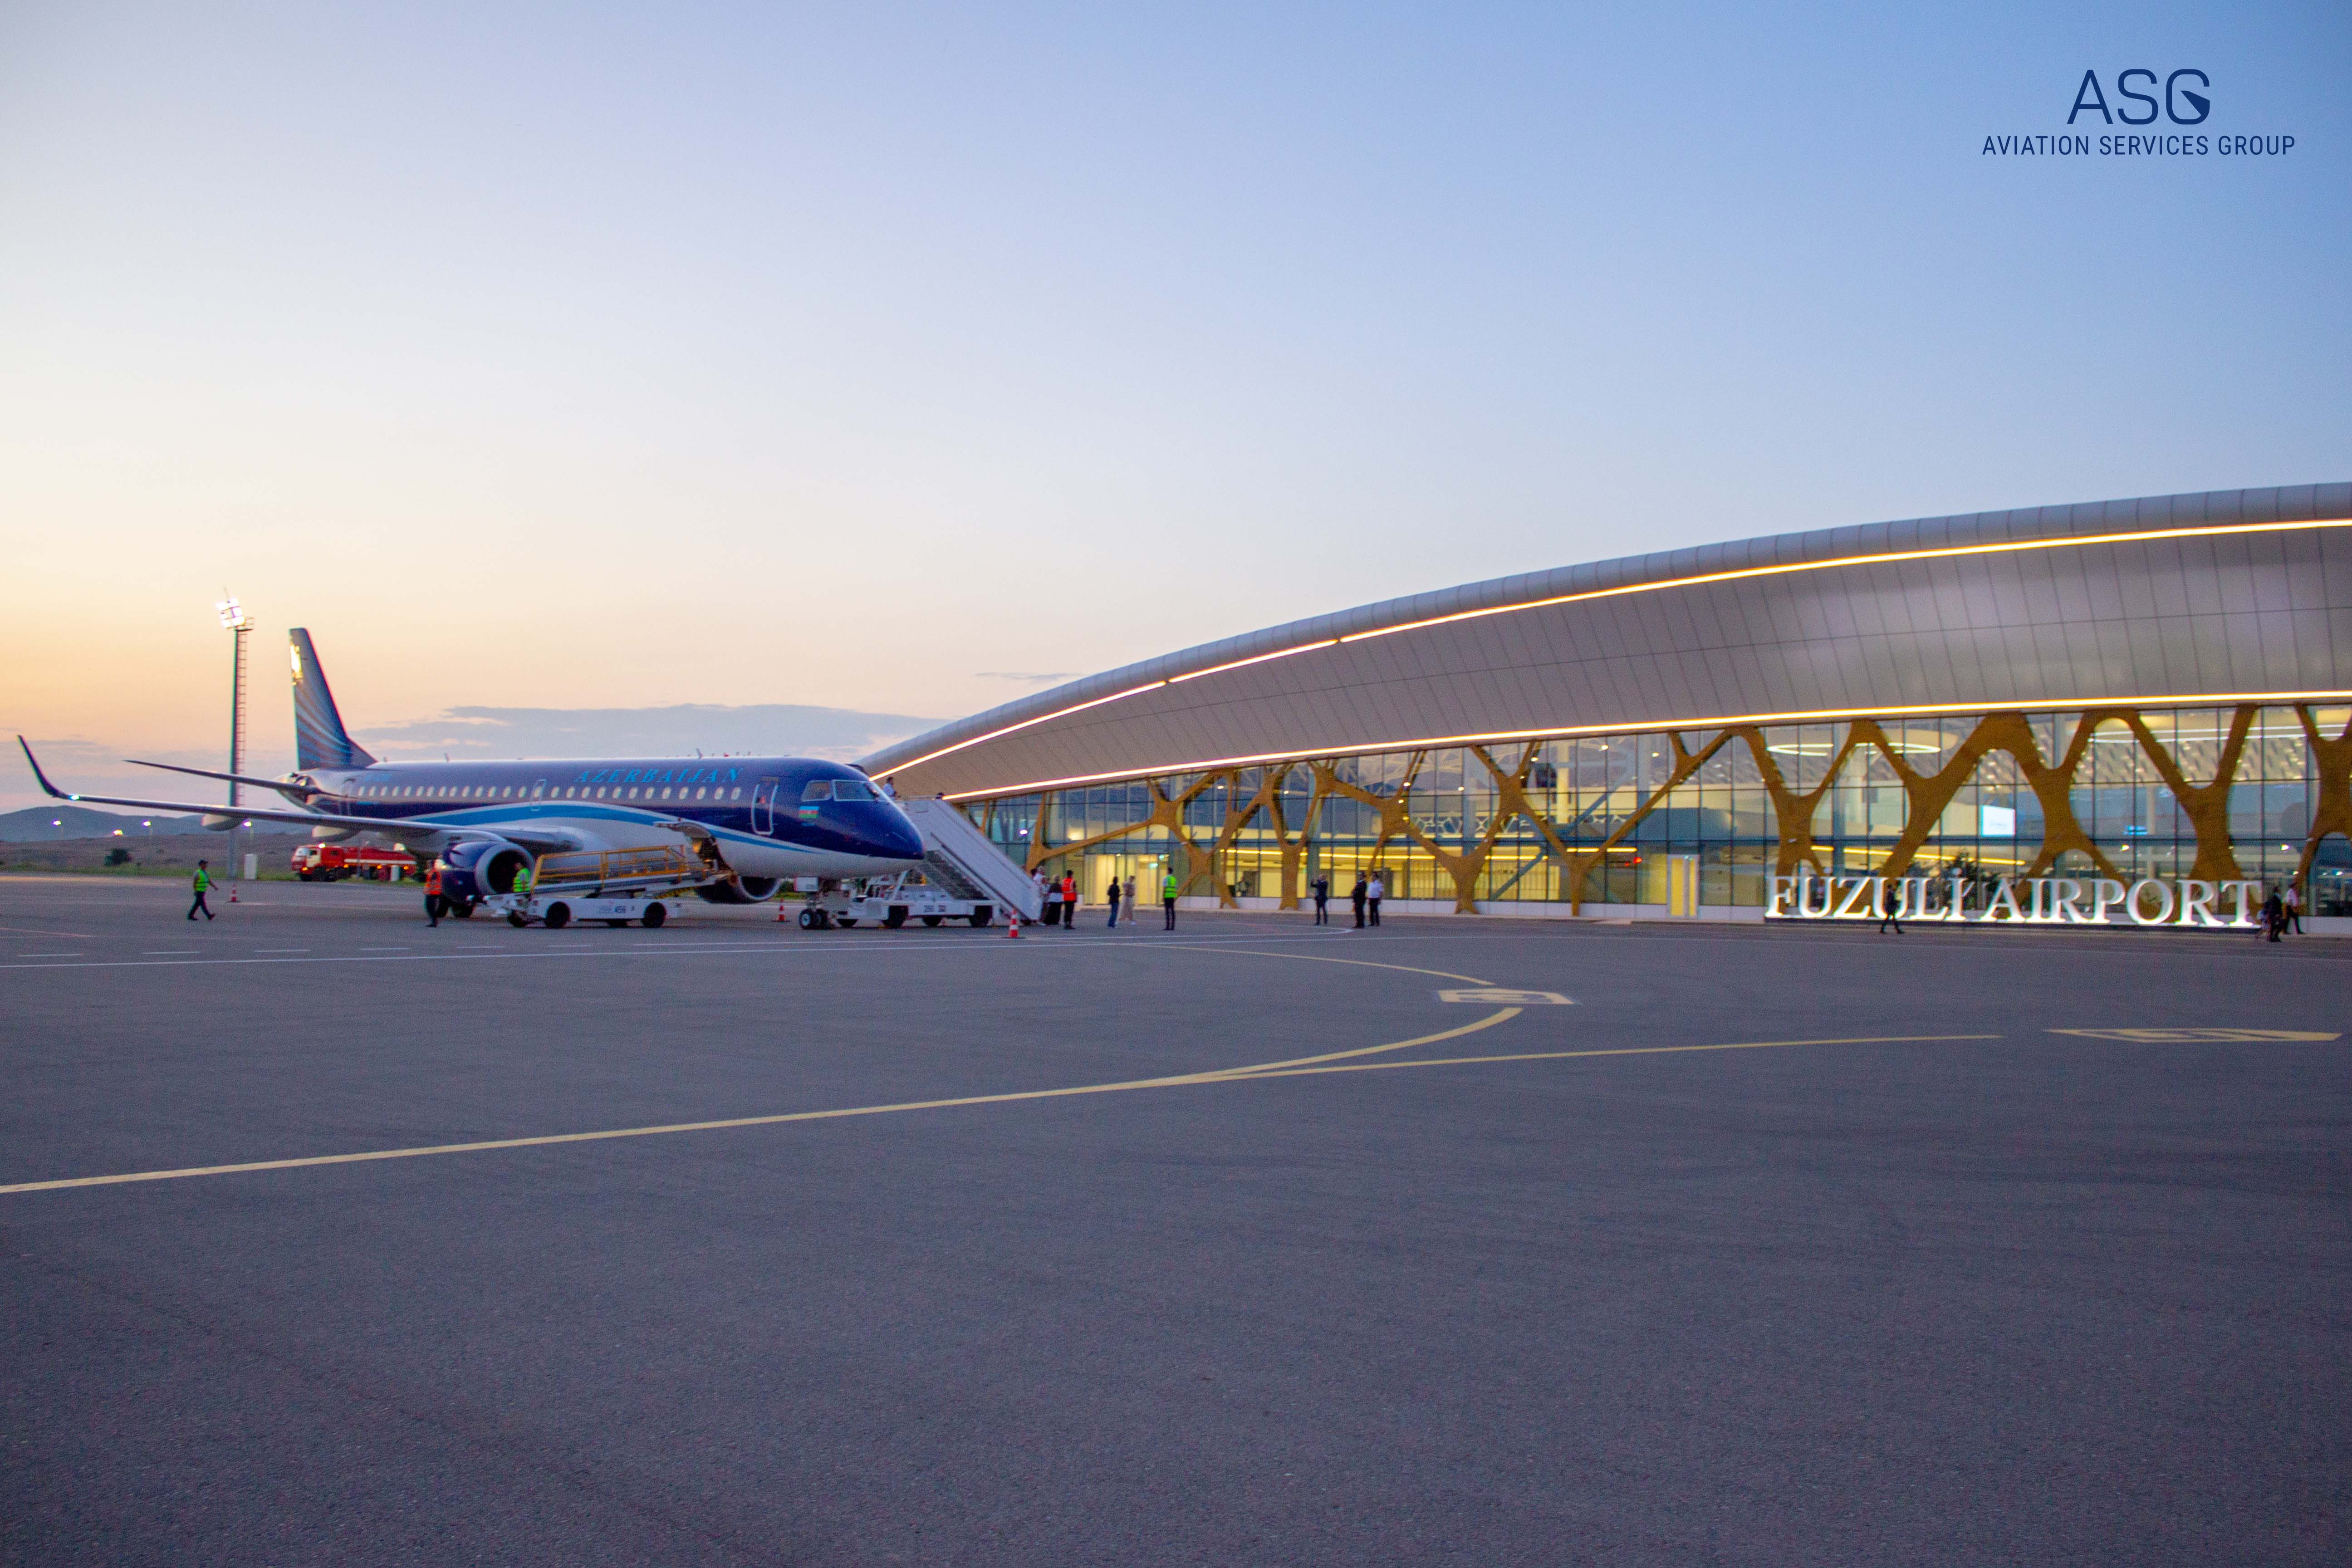 ASG Ground Handling welcomed the first regular AZAL flight at Fuzuli International Airport